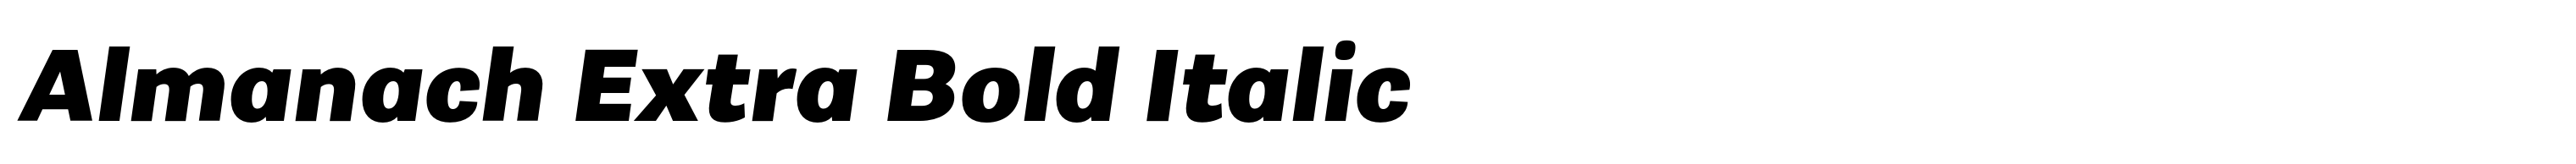 Almanach Extra Bold Italic